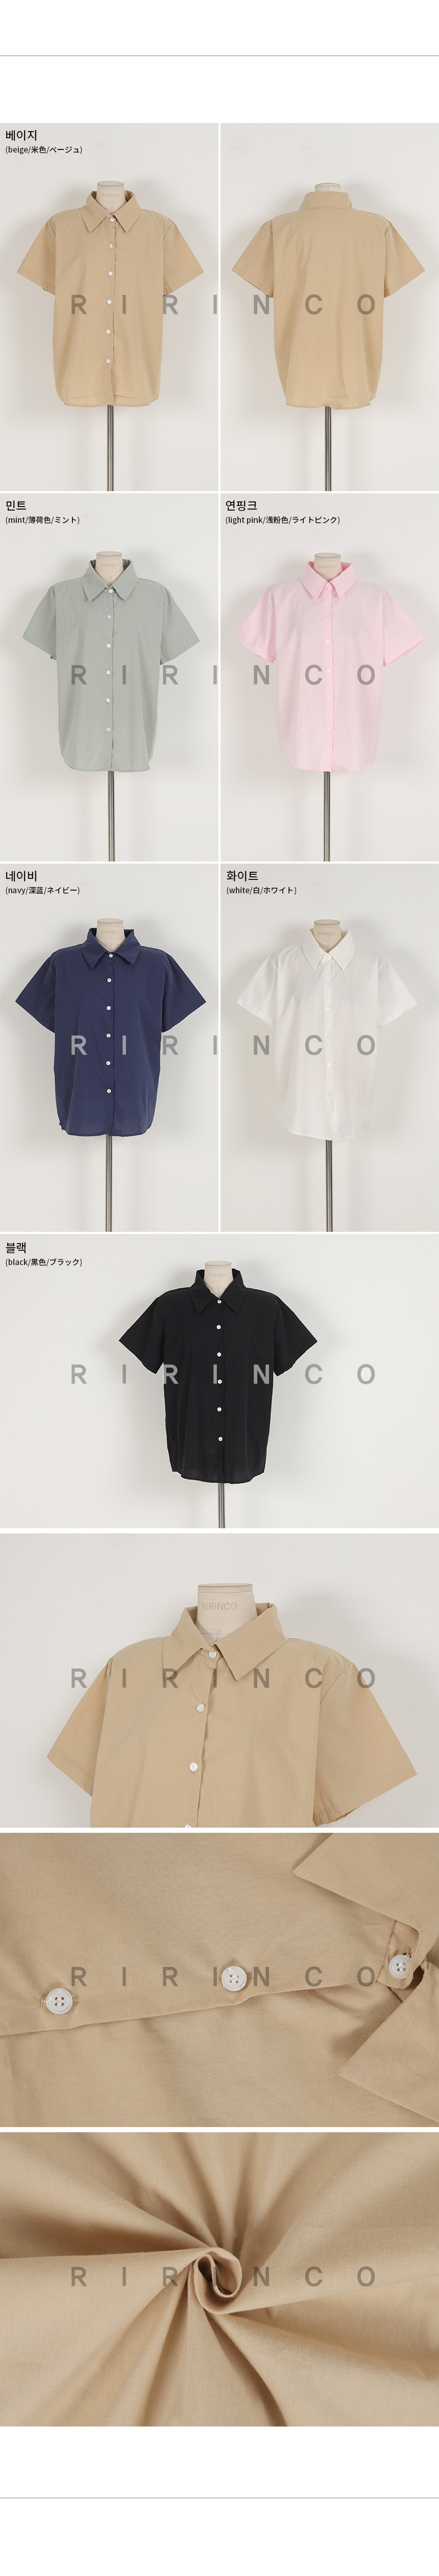 RIRINCO カラーネックルーズフィットベーシックシャツ